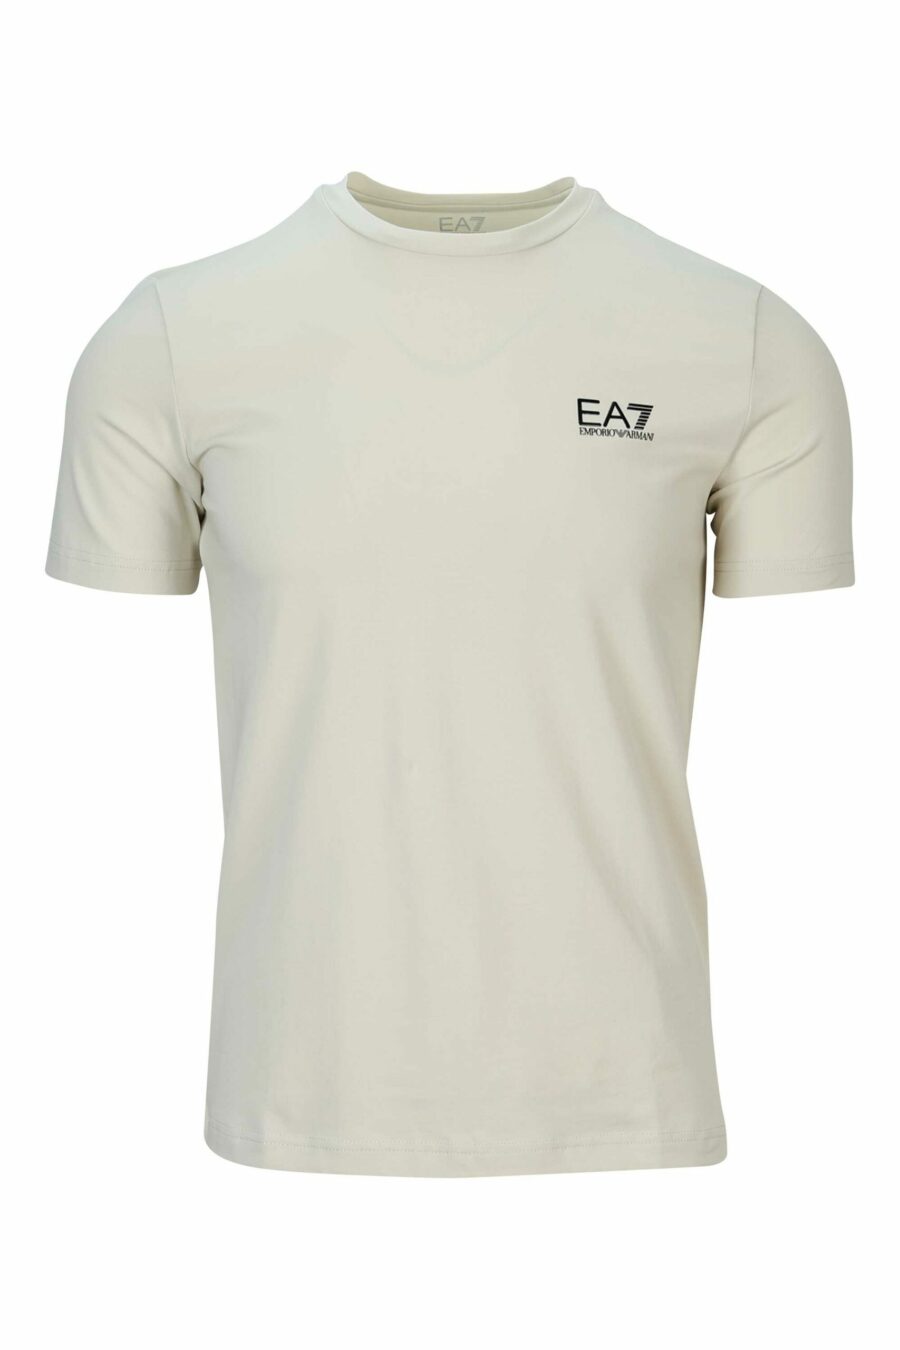 Beigefarbenes T-Shirt mit gummiertem "lux identity" Minilogo - 8058947457700 skaliert